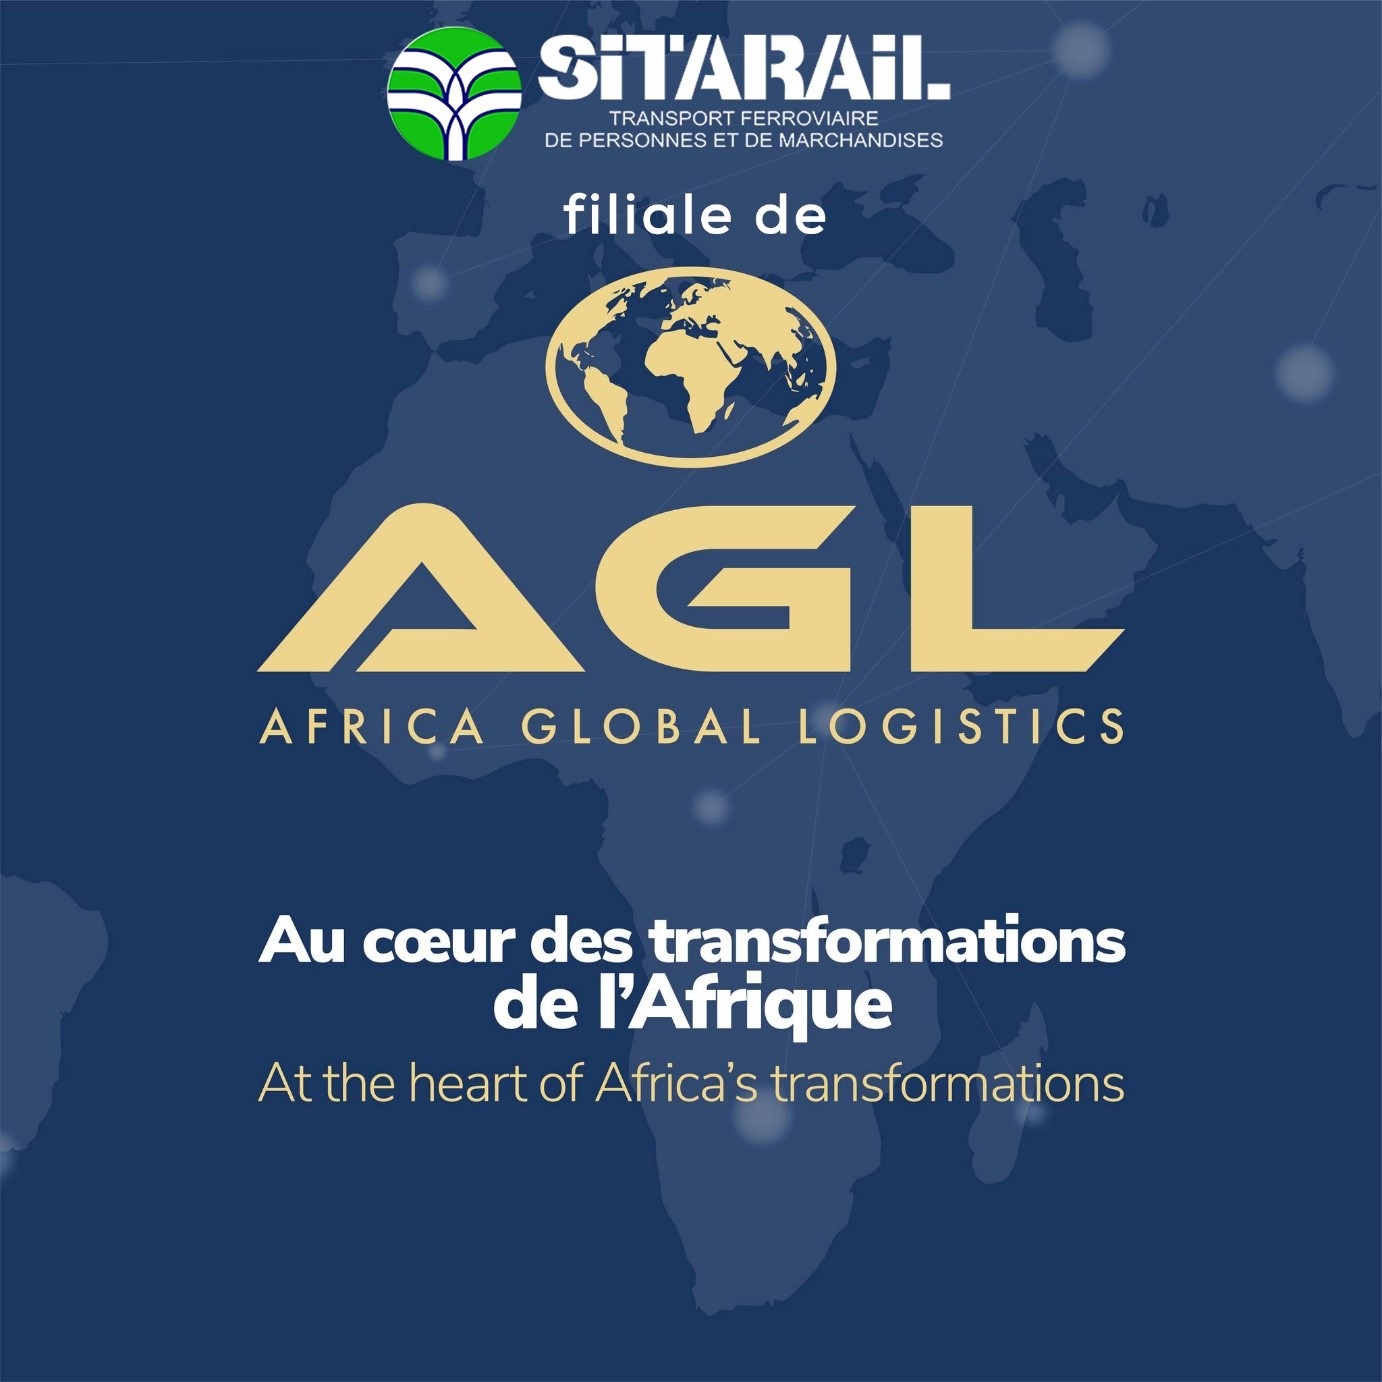 SITARAIL désormais filiale de Africa Global Logistics (AGL) du groupe italo-suisse MSC, leader mondial du transport maritime